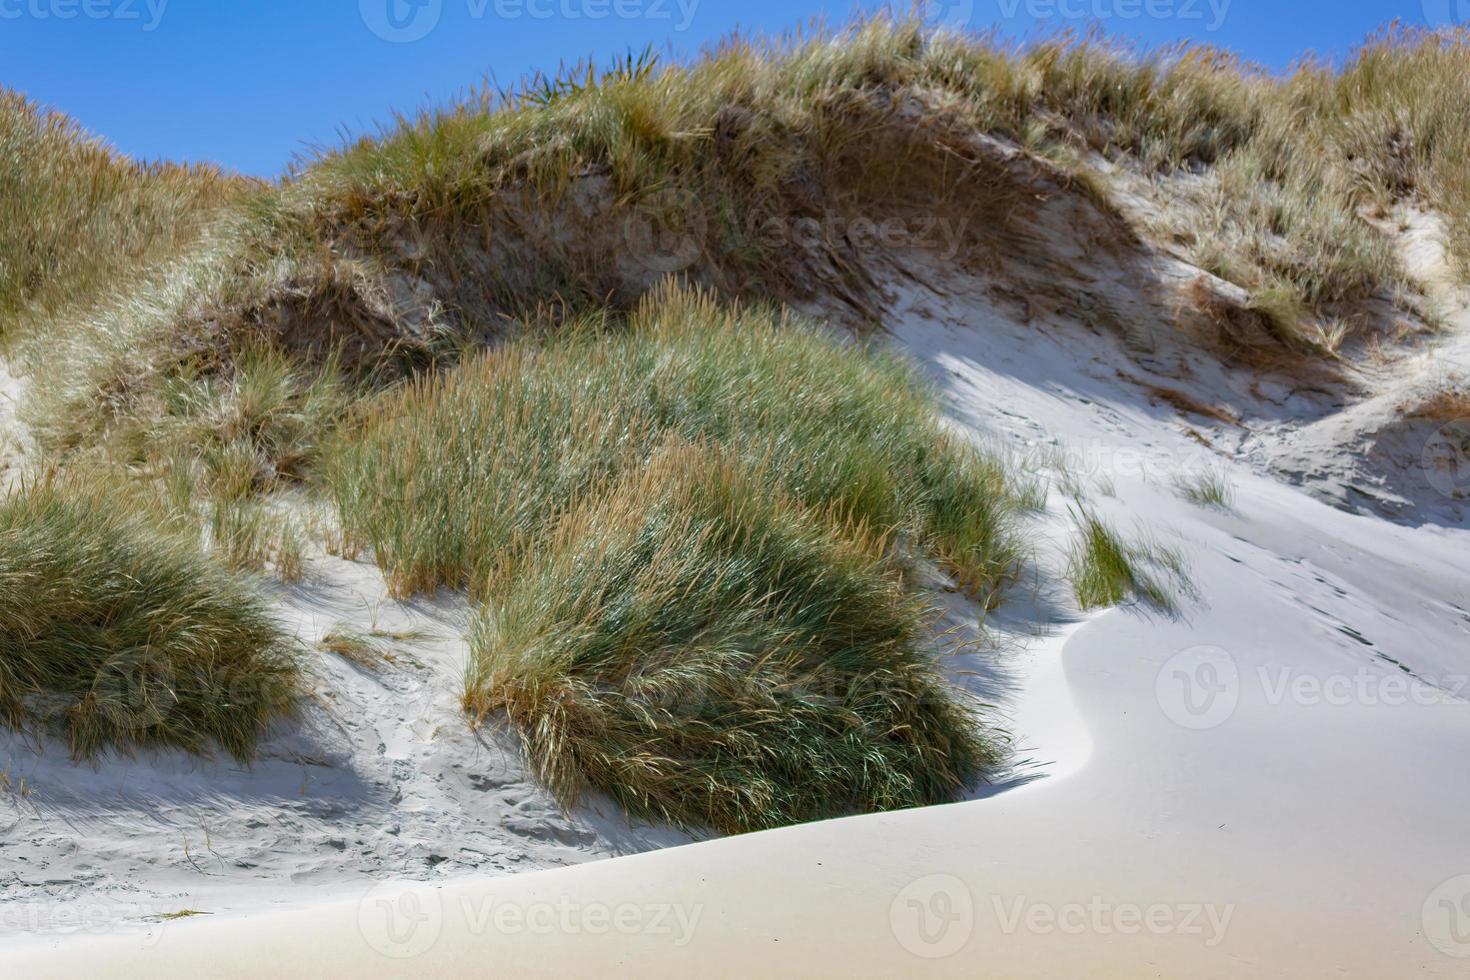 dunas de areia em sandfly bay na nova zelândia foto